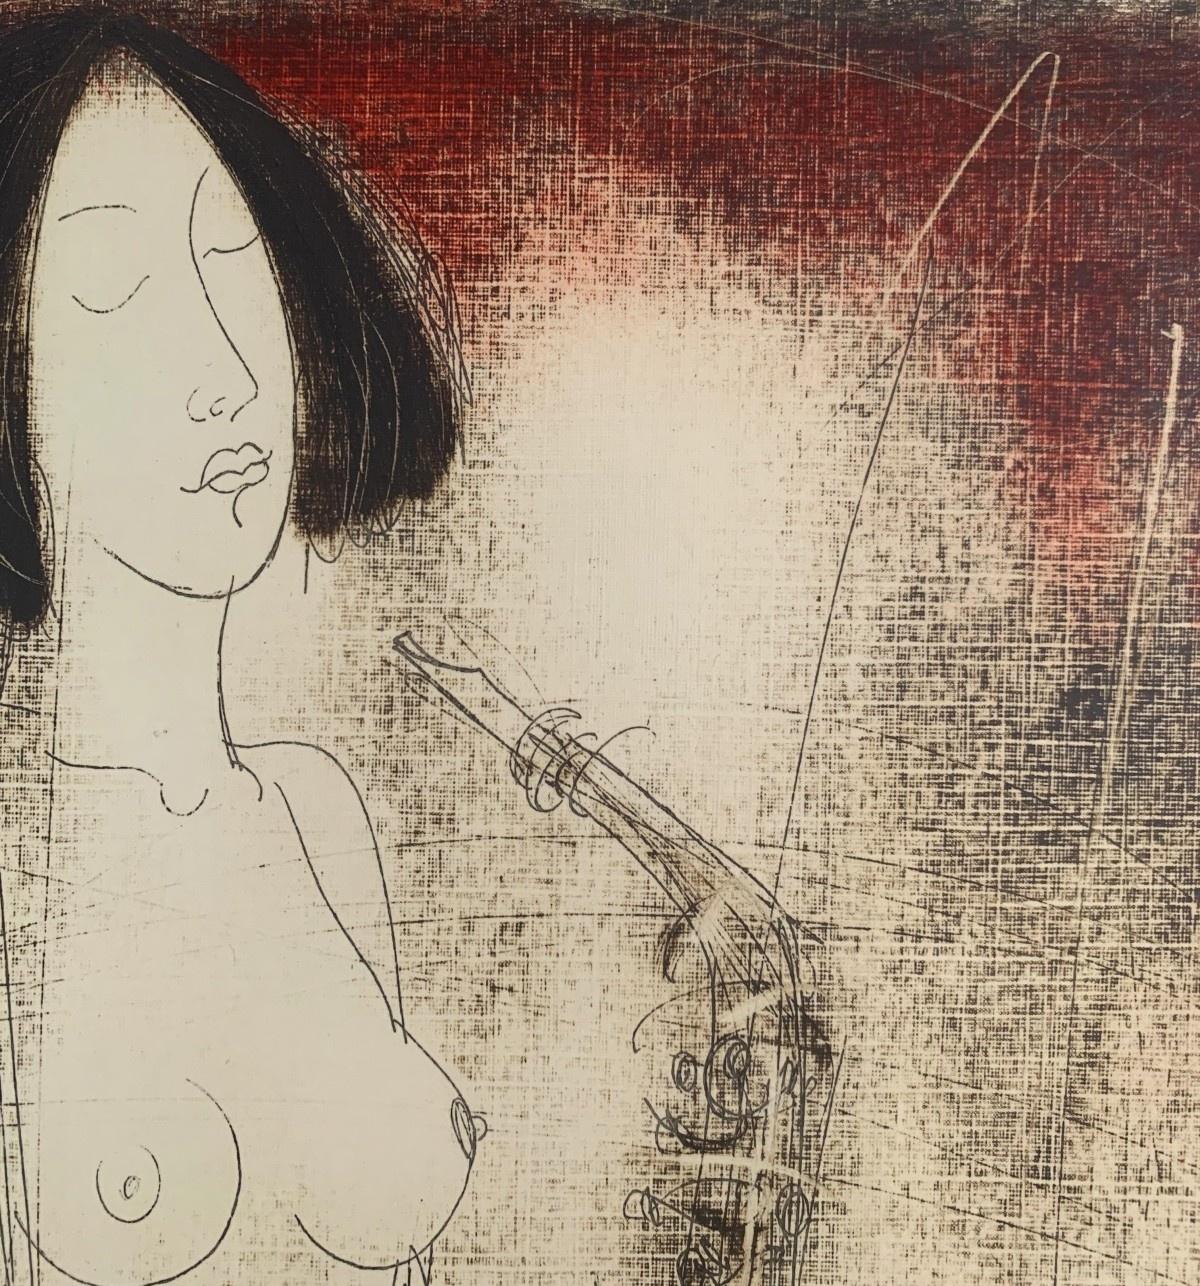 Zeitgenössischer figurativer Akt-Monotypie-Druck des weißrussischen Künstlers Siergiej Timochow. Der Druck zeigt eine Frau, die auf einem Saxophon spielt. Die Komposition ist in zwei Farben gehalten: rot und beige. Das Papier/Karton ist